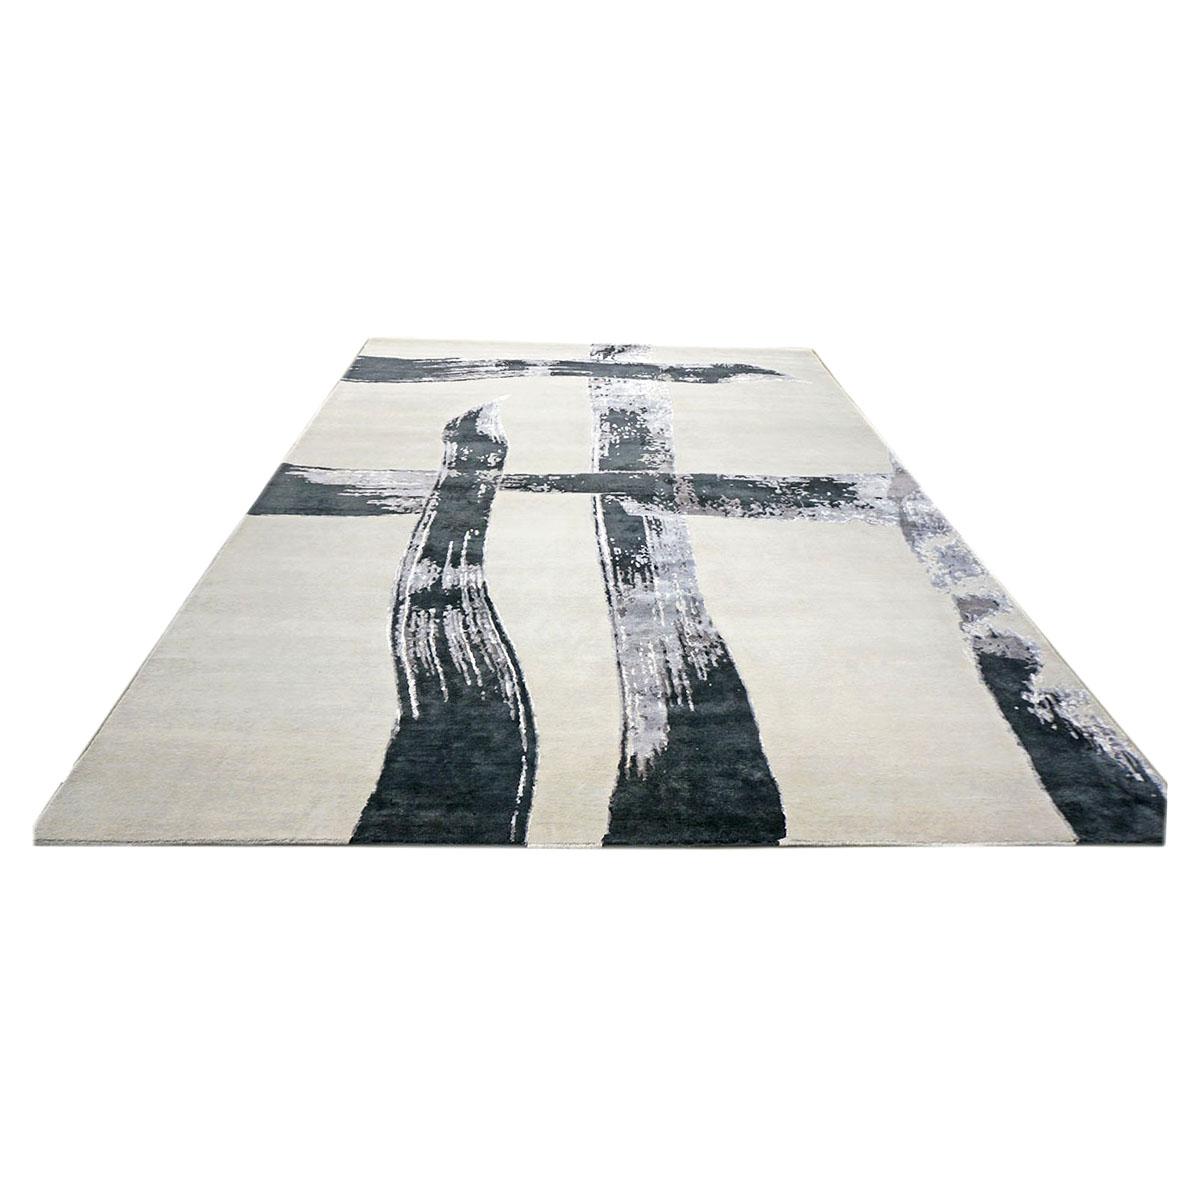 Ashly fine rugs présente un tapis en laine et soie 8x10 ivoire, noir et gris fait main, d'inspiration New Modern, avec des fibres brillantes et un poil épais et durable. Cette magnifique collection a été conçue par notre designer interne et